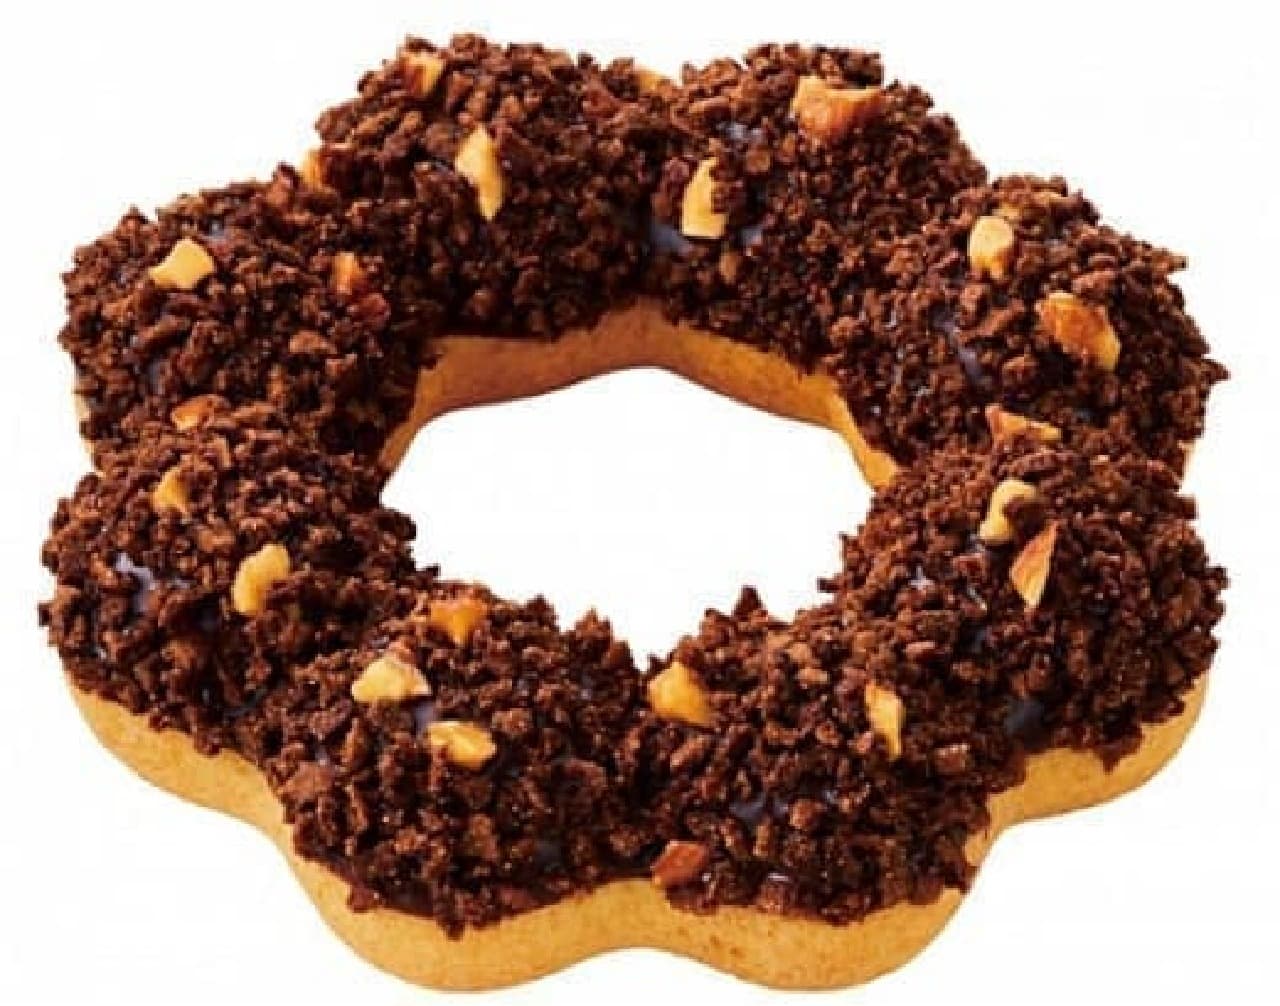 Mister Donut "Pon de Crunch & Almonds"